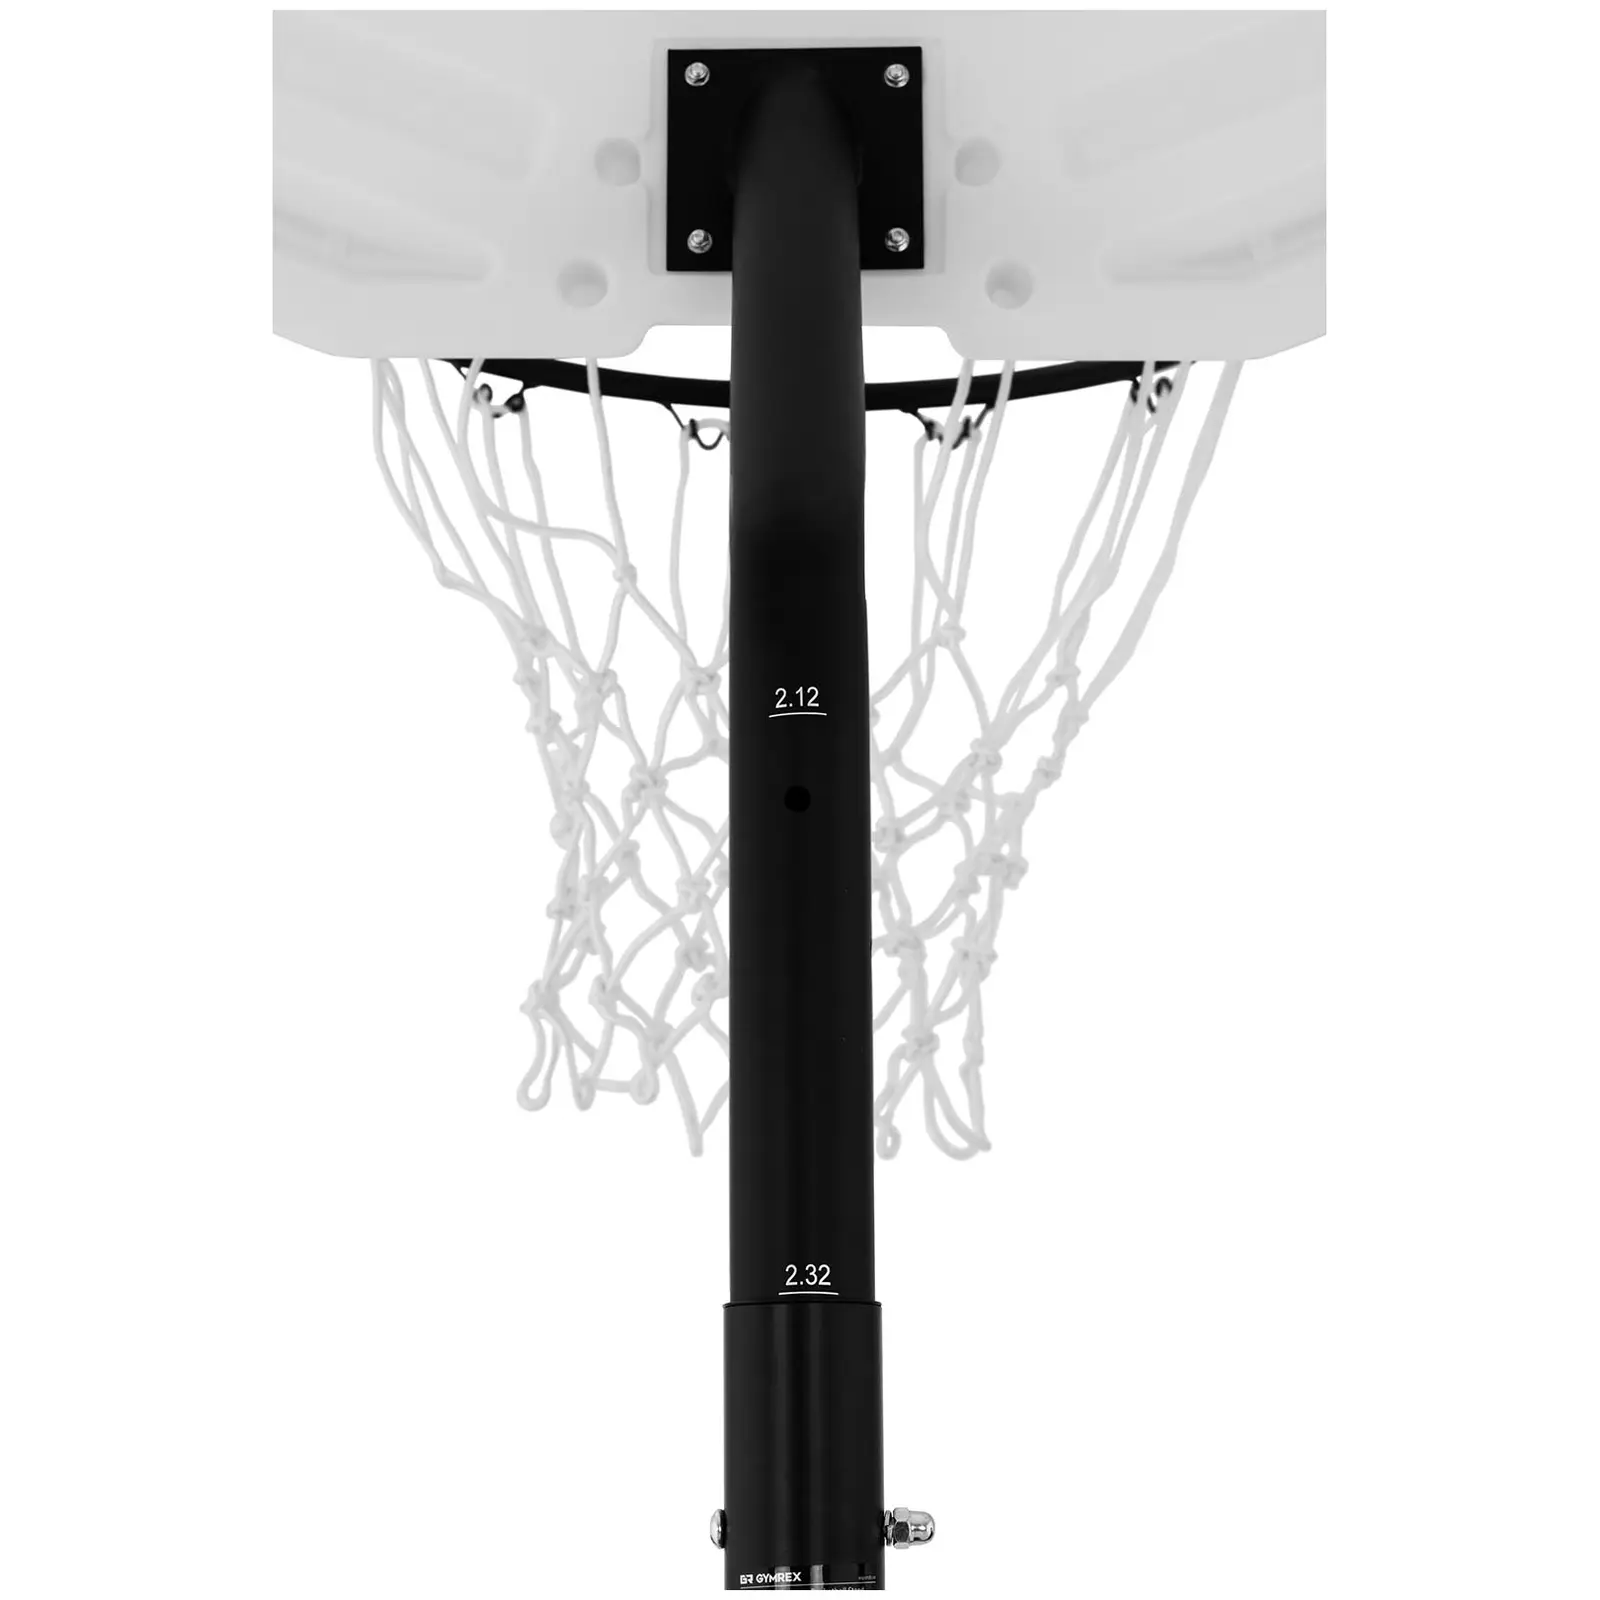 Stojalo za košarko - nastavljivo po višini - 190 do 260 cm